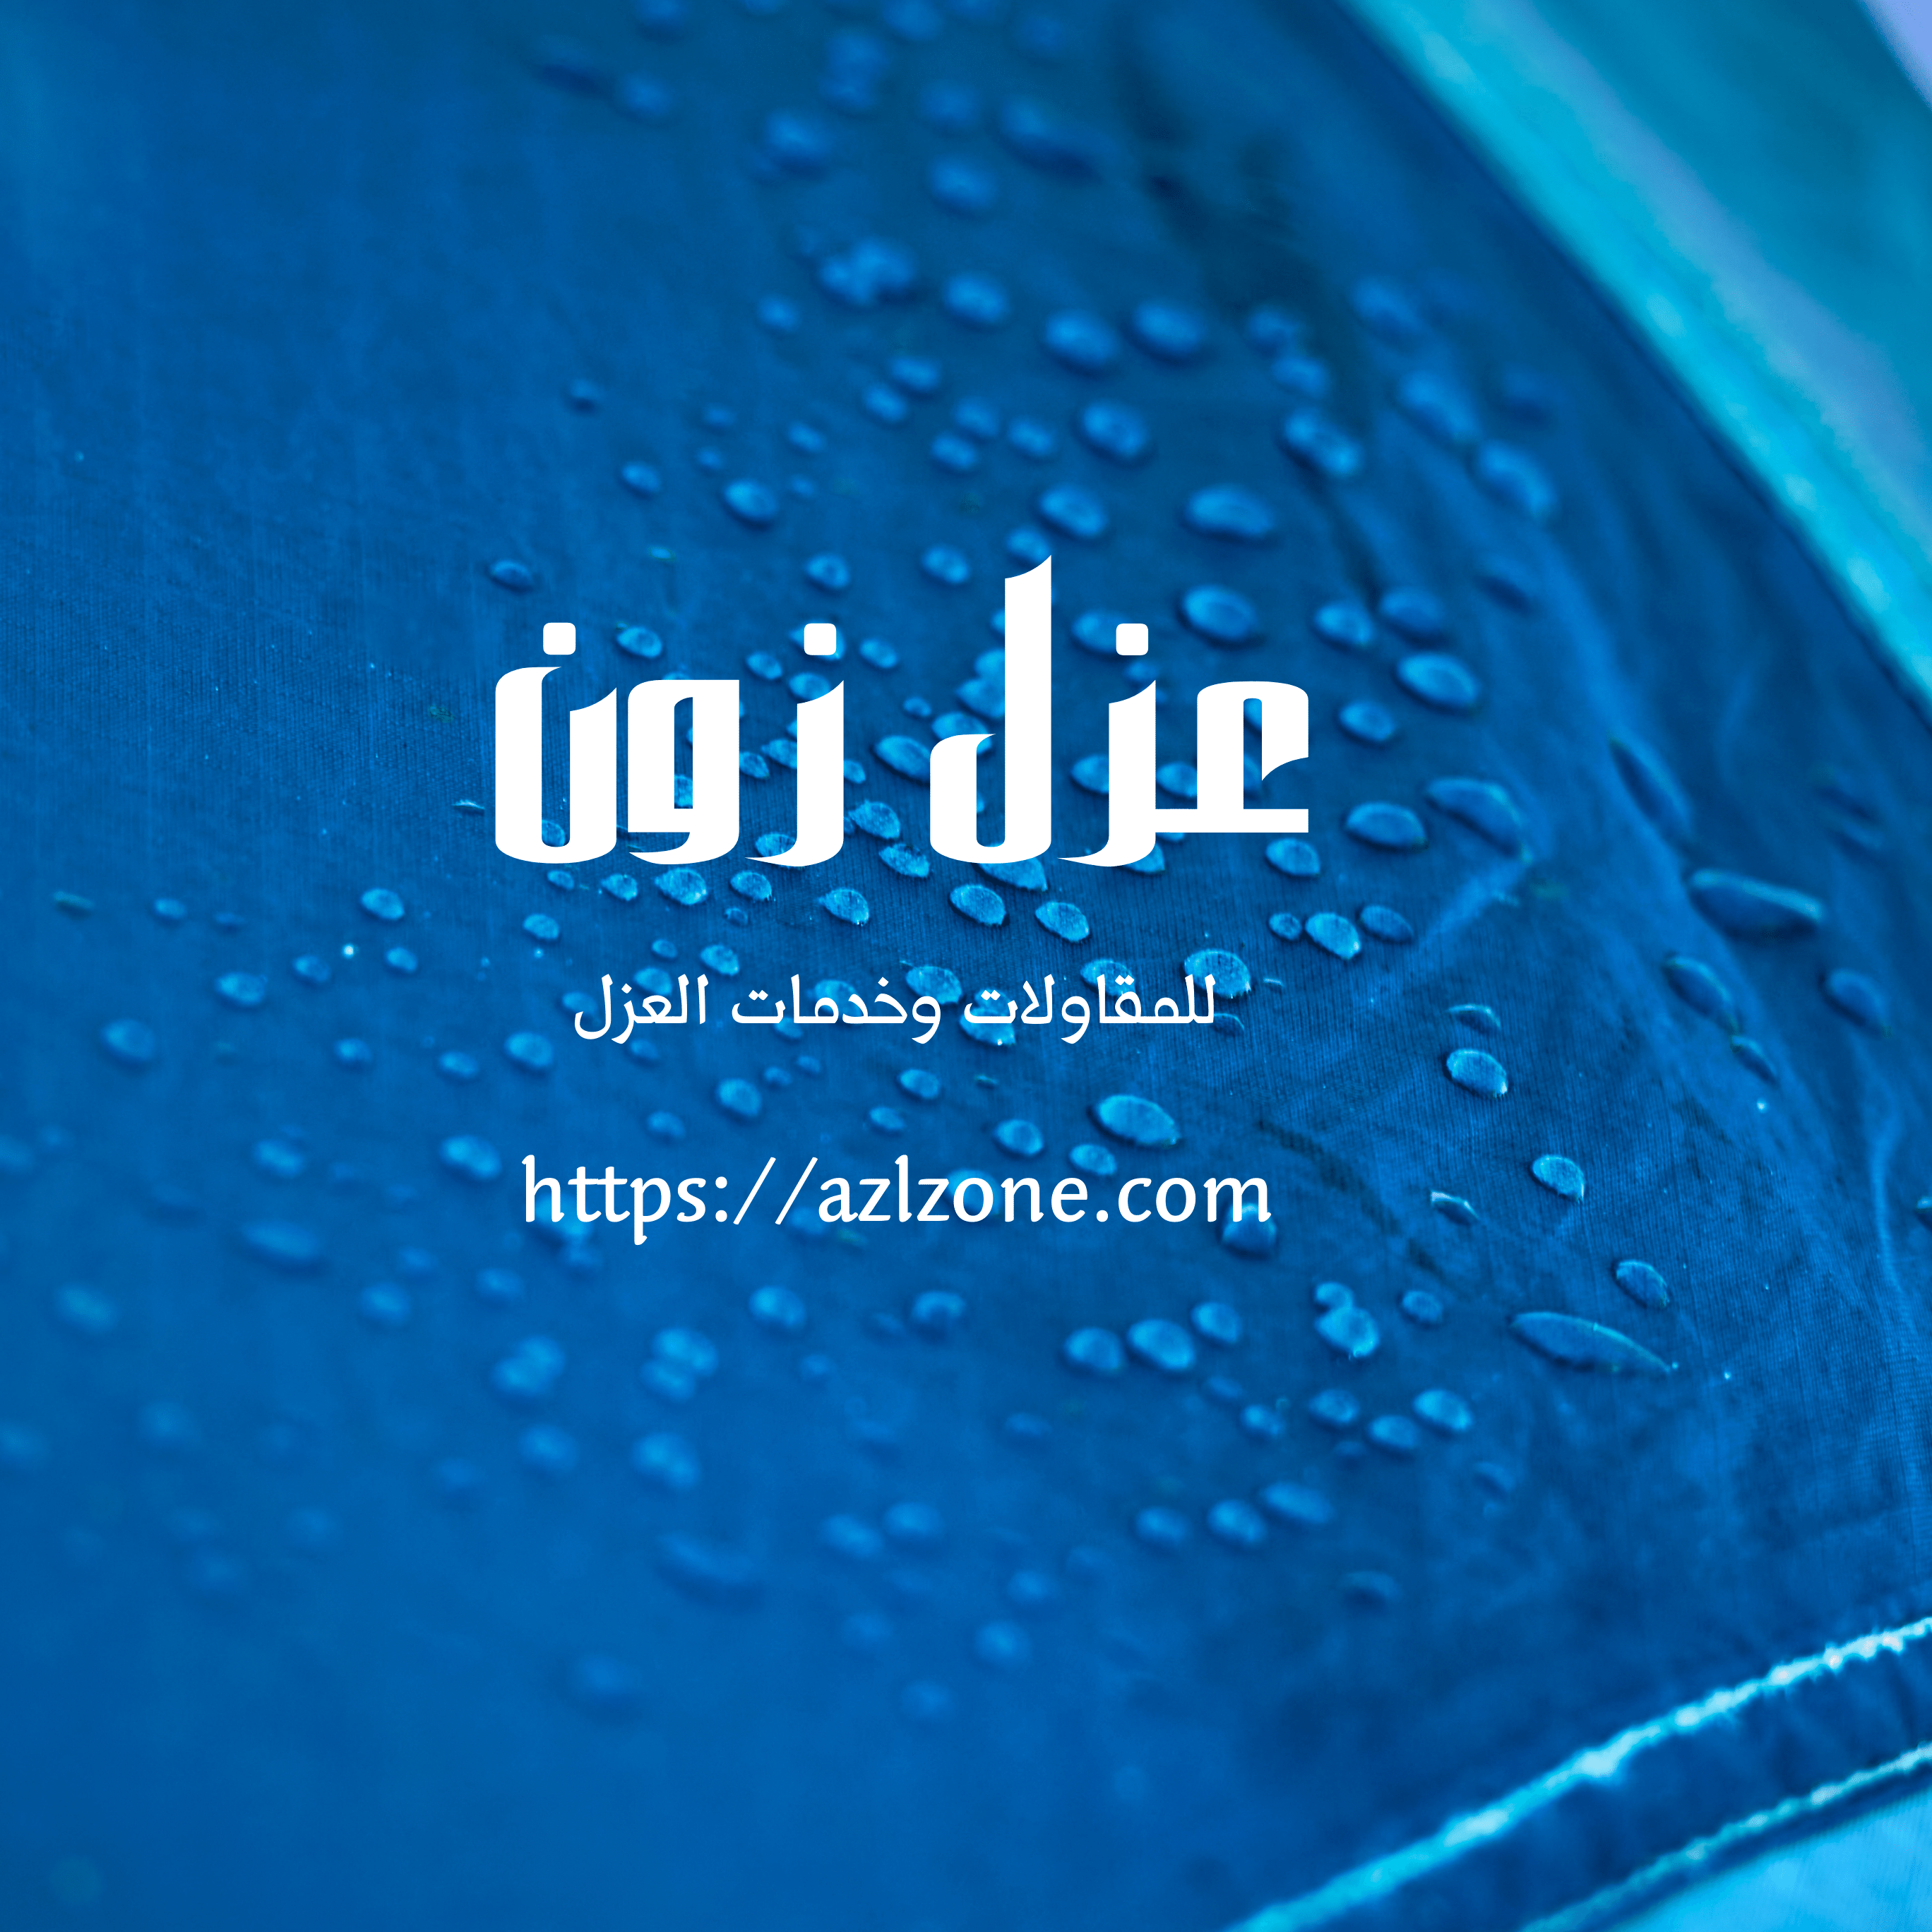 أفضل شركة عزل خزانات براسيل وسلطنة عمان عزل خزان مائي وتنظيف مياه الخزانات براسيل وصحار ولحام خزانات فيبر جلاس خصم 40%